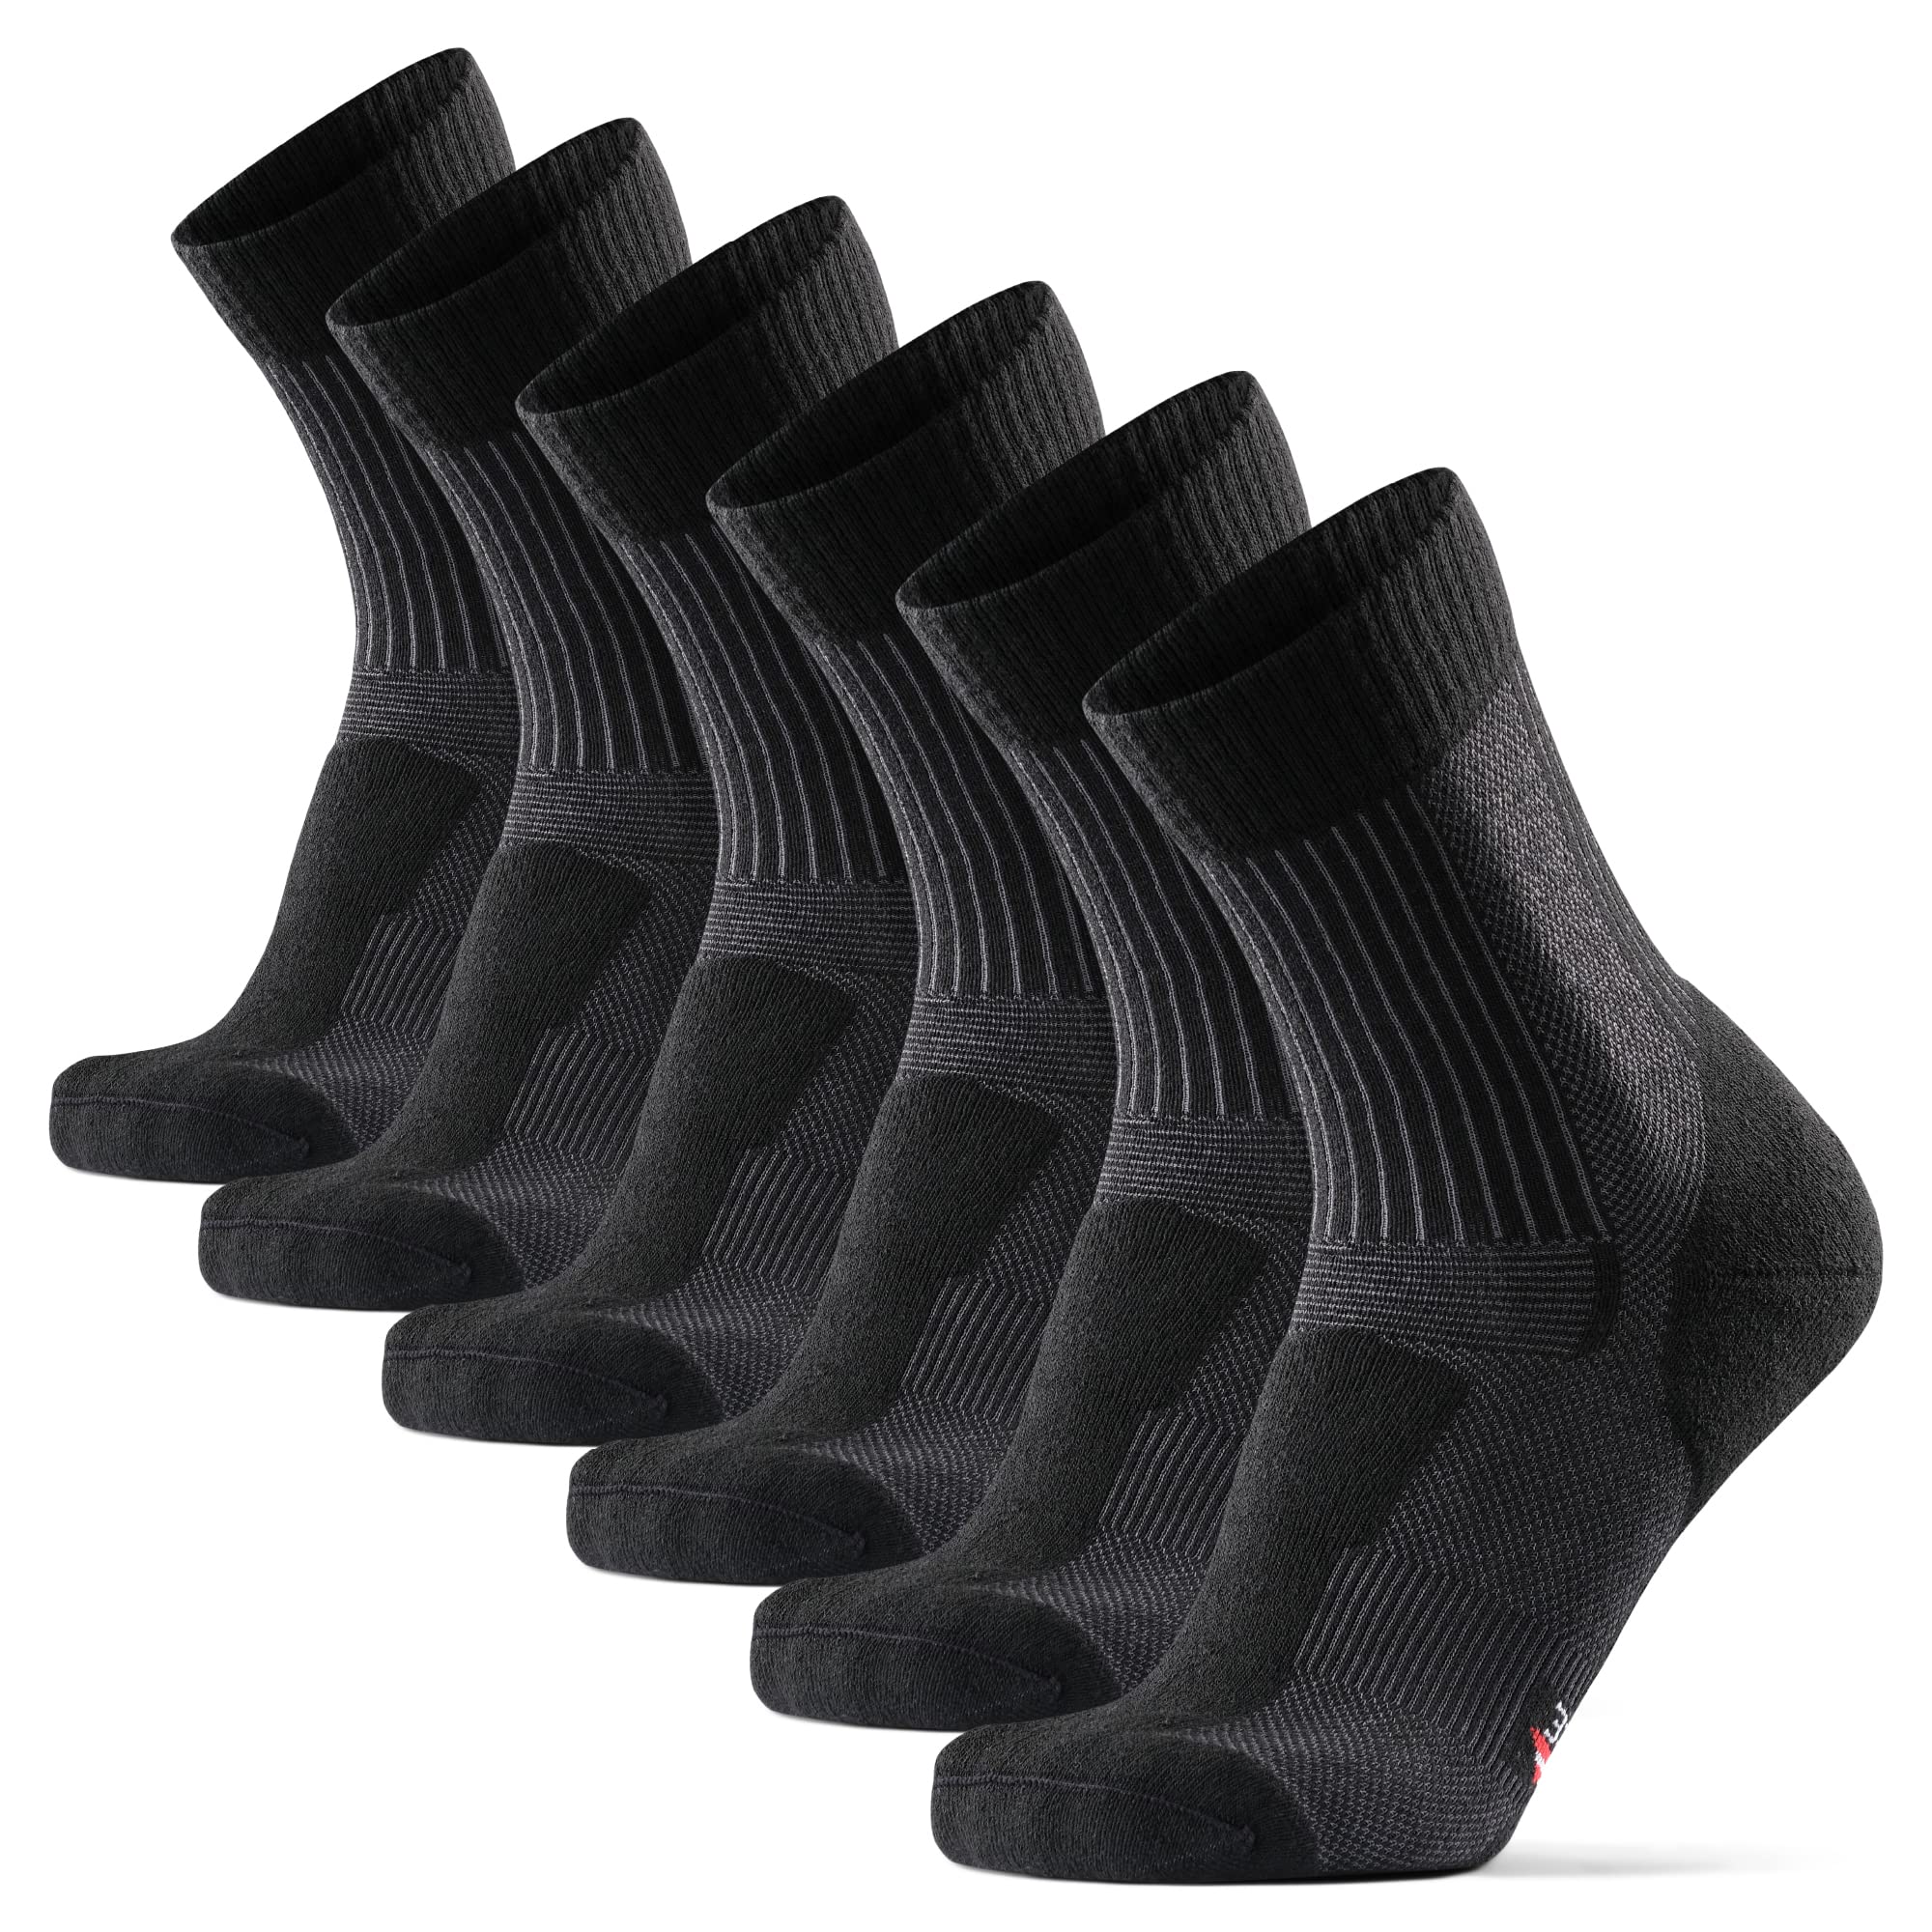 DANISH ENDURANCE 3 Pack Merino Wool Light Hiking Socks for Men, Women &  Kids Black Large